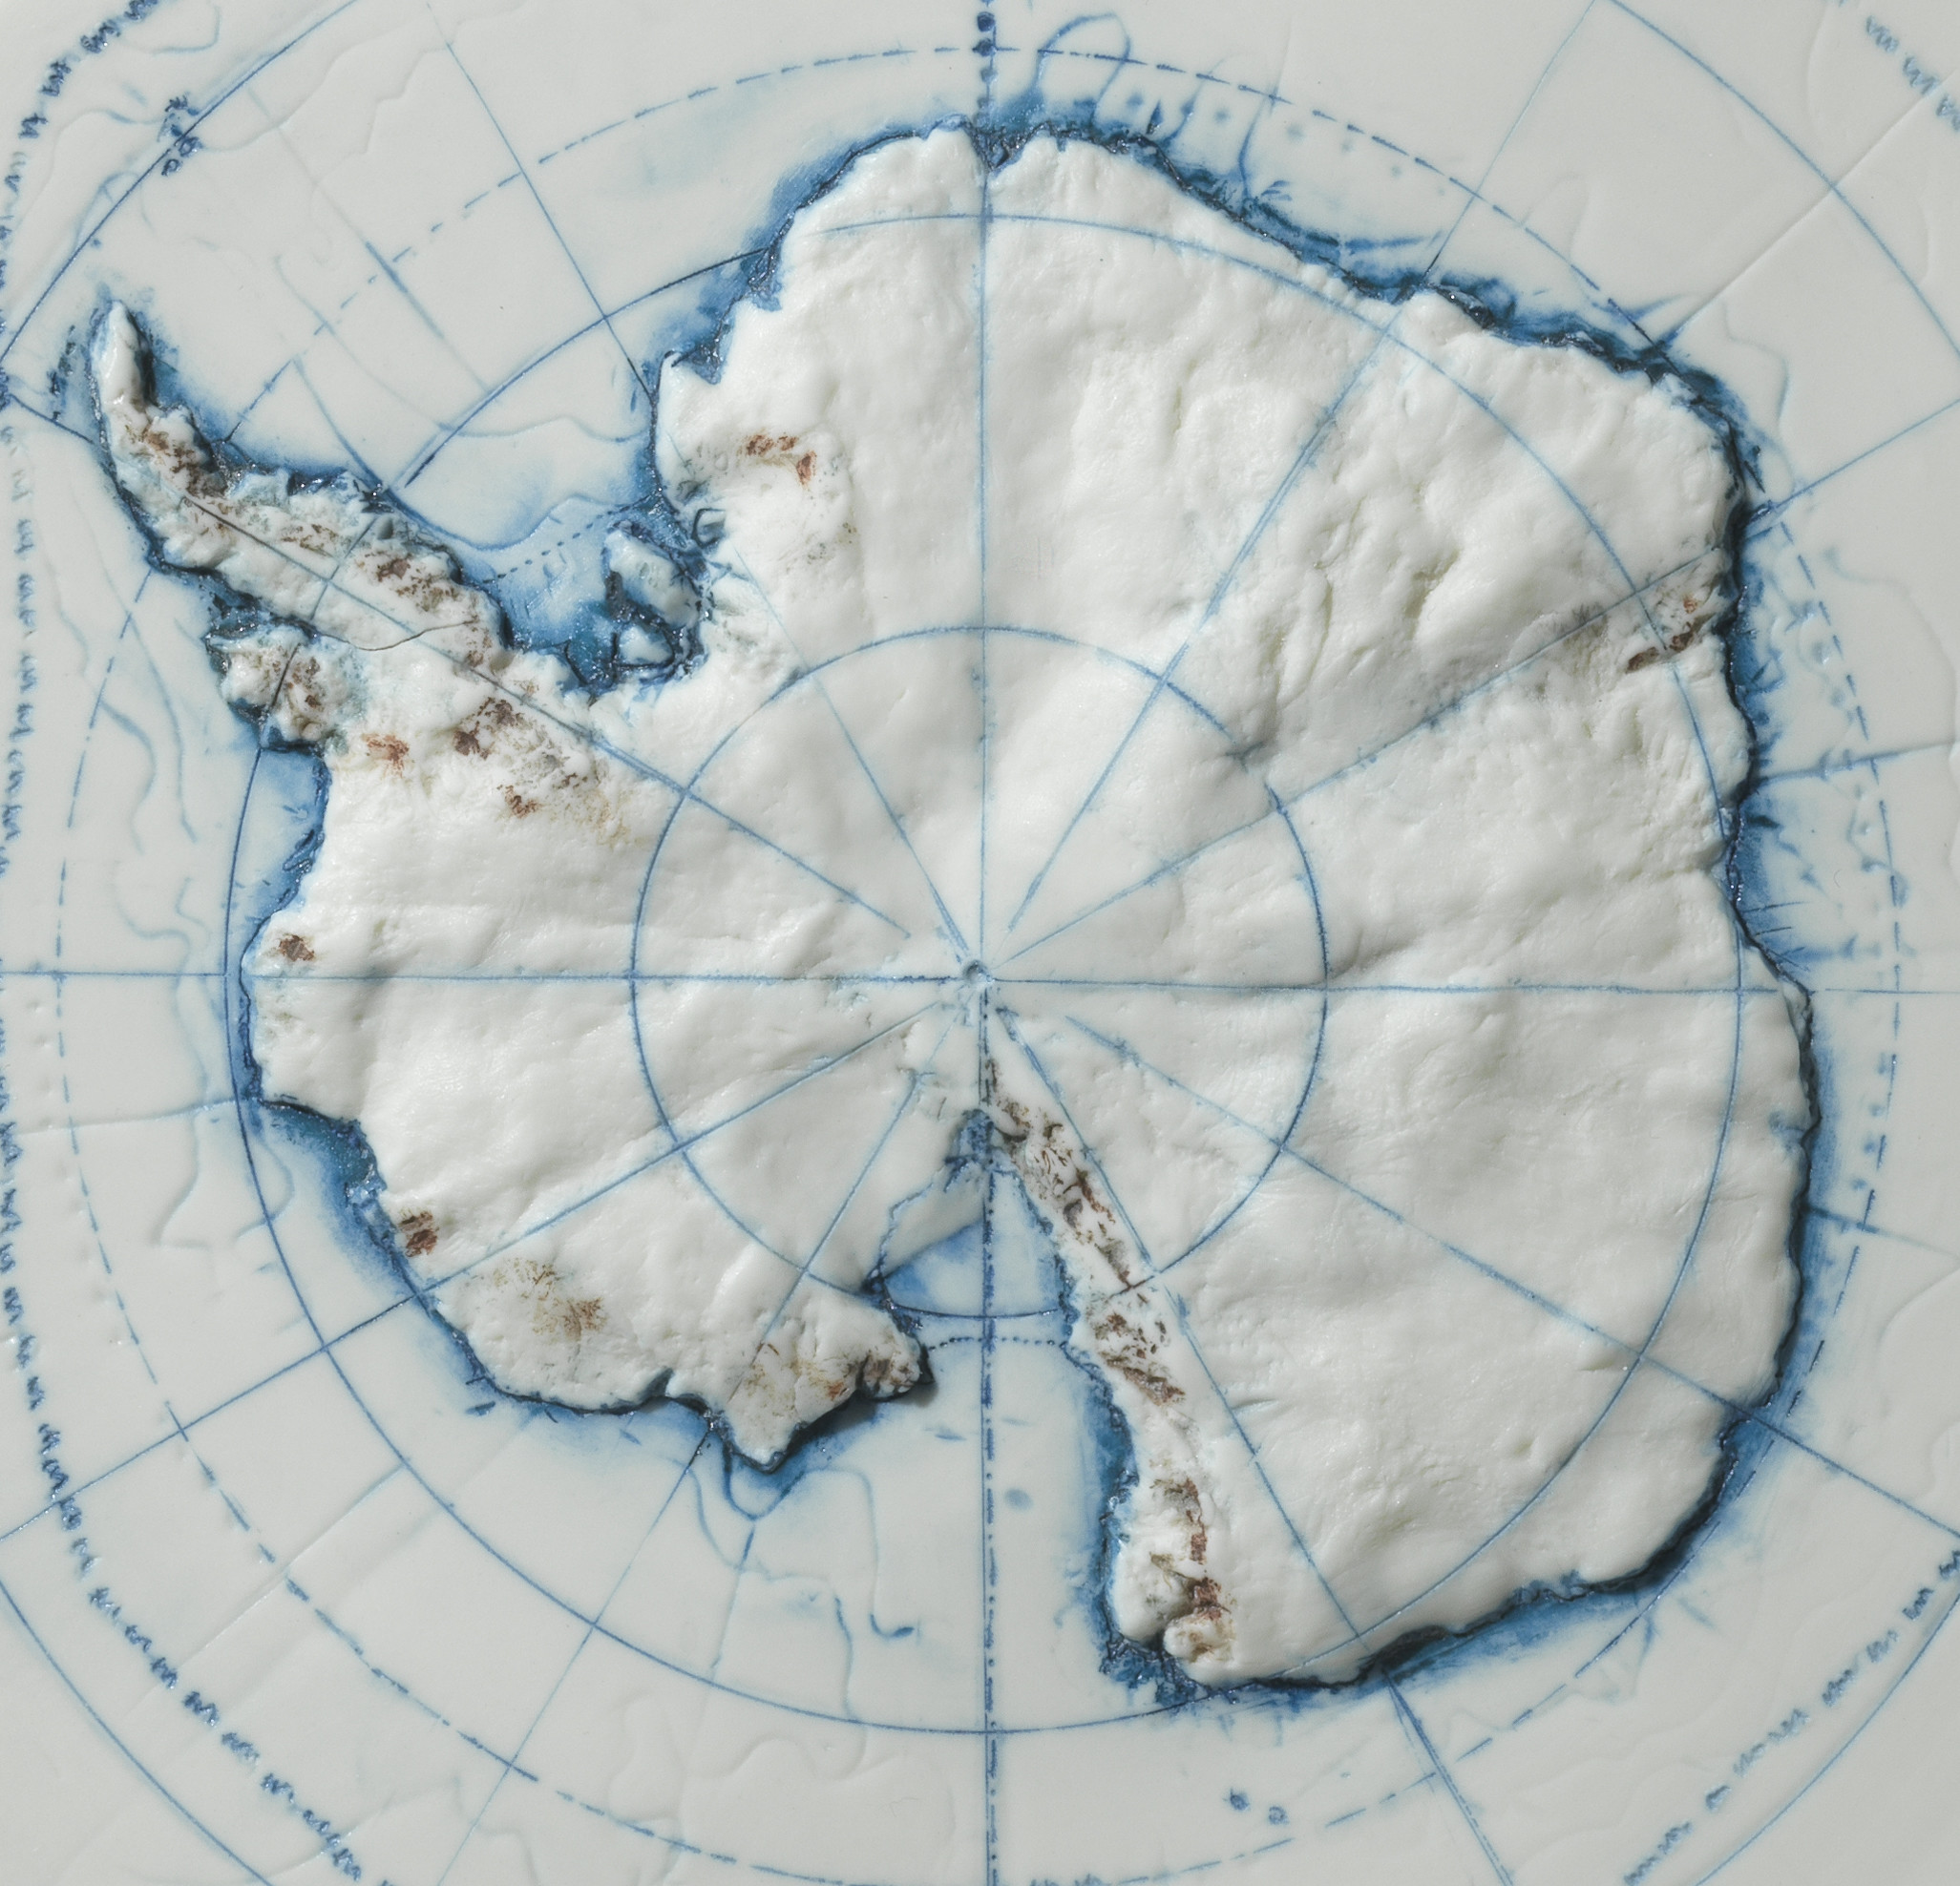 Poles Apart - Antarctica